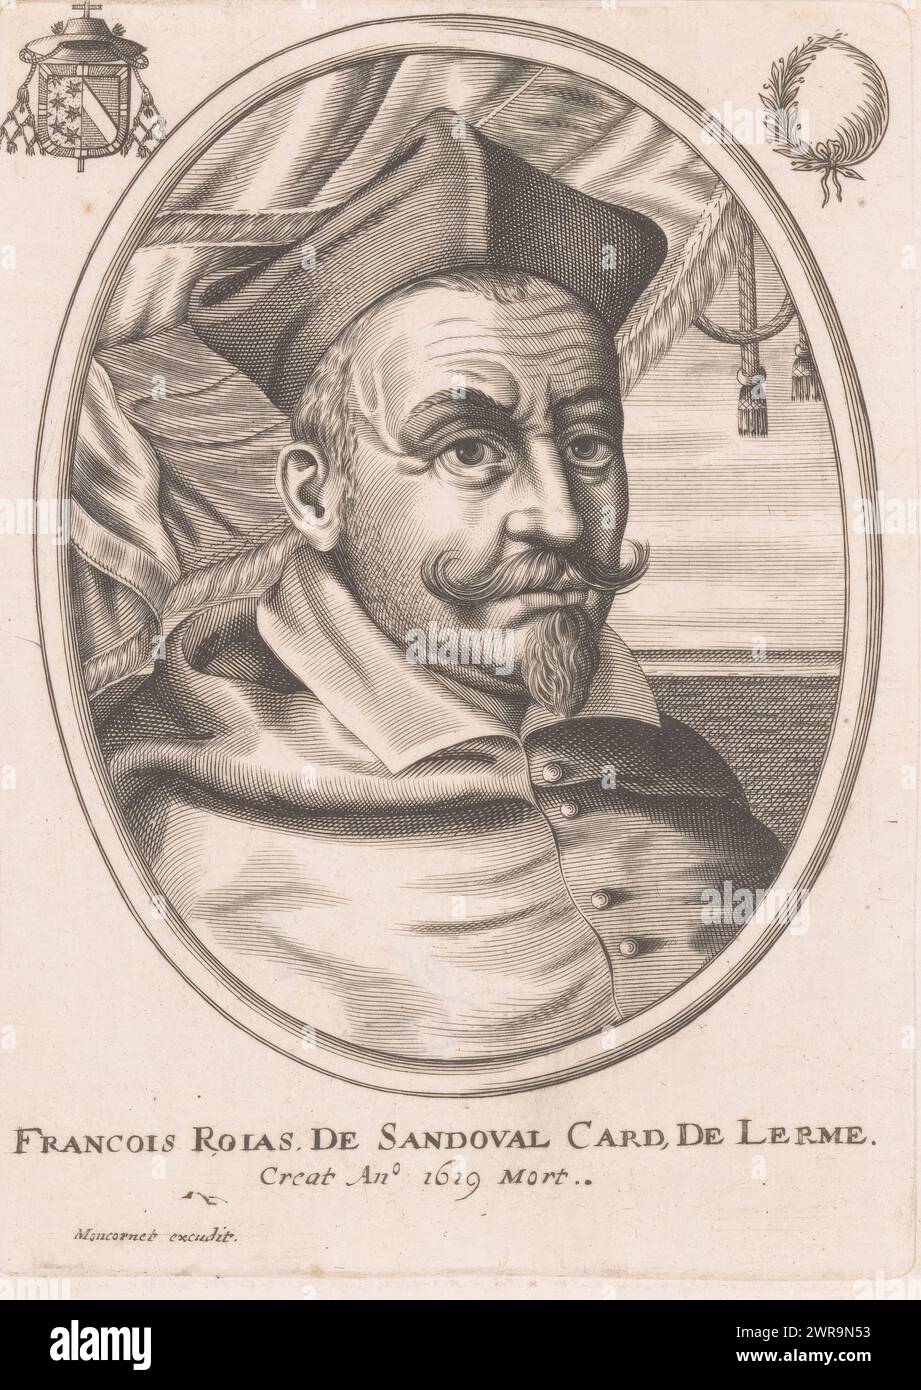 Portrait of Francisco de Sandoval y Rojas, print maker: anonymous, publisher: Balthazar Moncornet, Paris, 1619 - 1668, paper, engraving, height 165 mm × width 119 mm, print Stock Photo